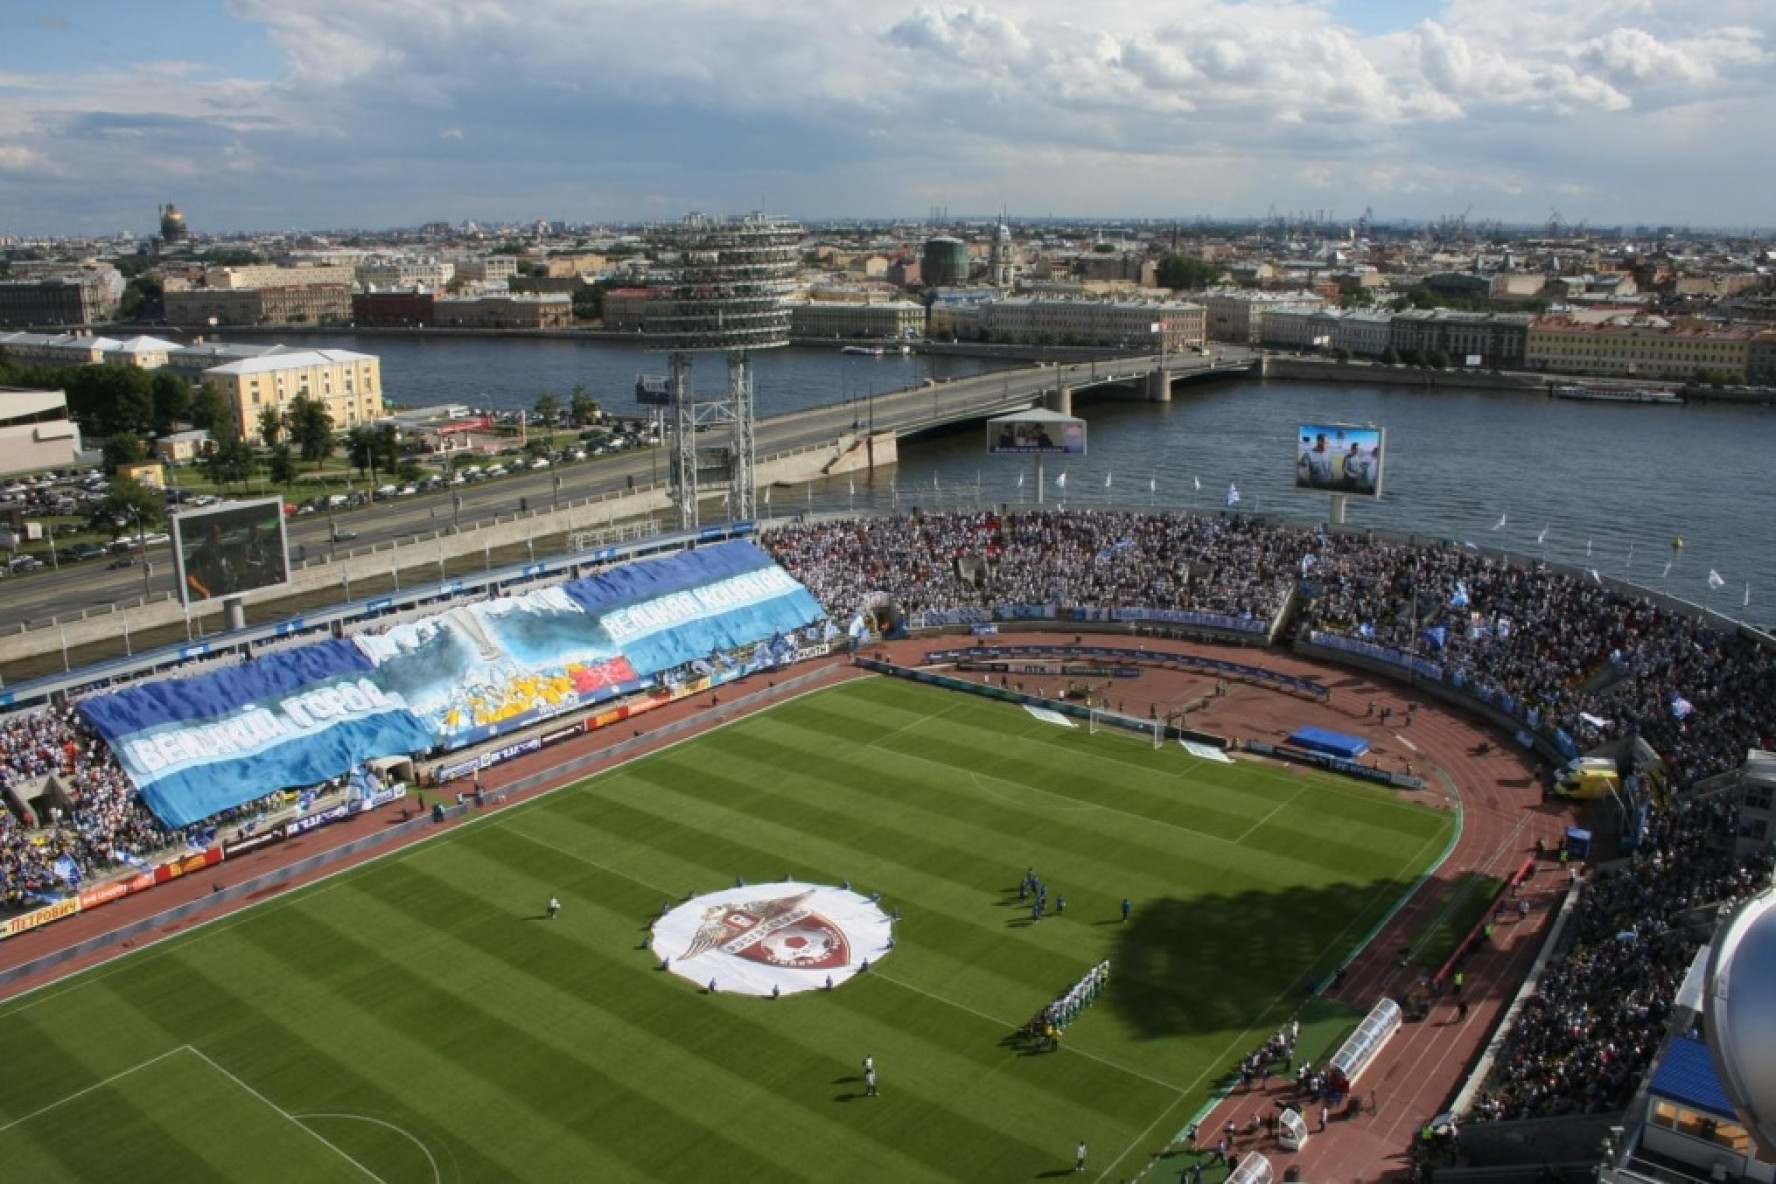 Футбольные сайты санкт петербурга